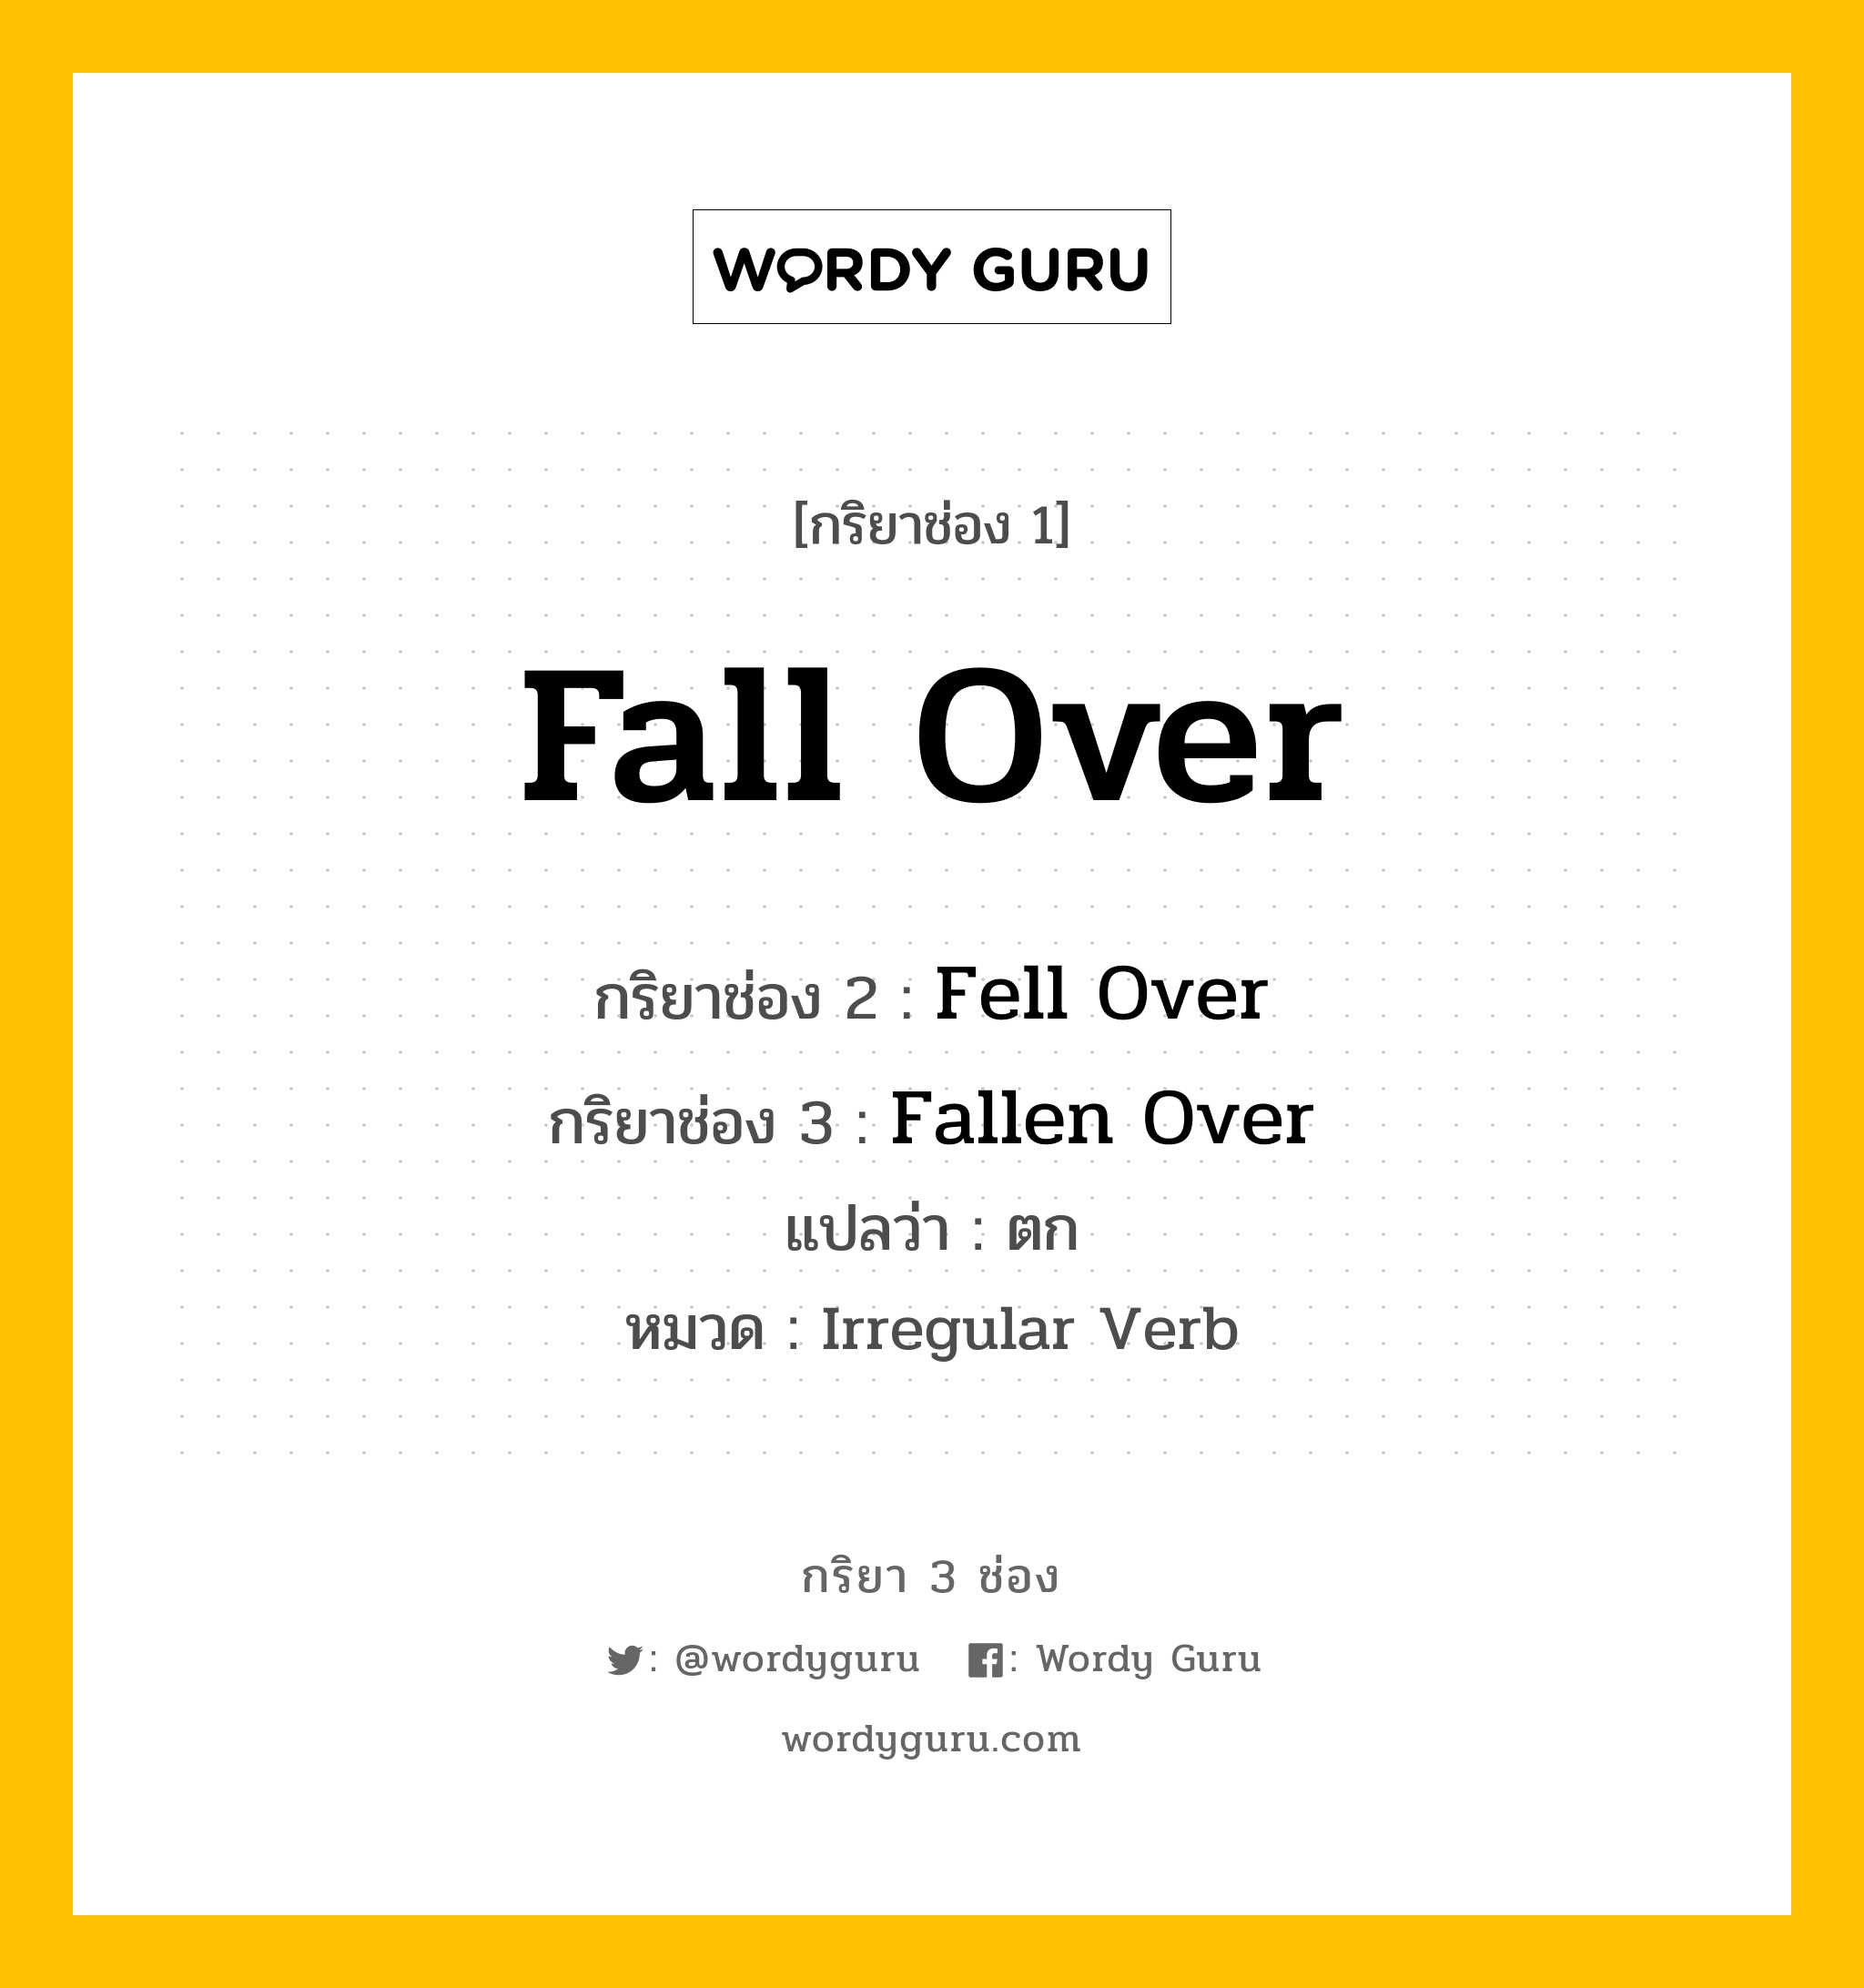 Fall Over มีกริยา 3 ช่องอะไรบ้าง? คำศัพท์ในกลุ่มประเภท Irregular Verb, กริยาช่อง 1 Fall Over กริยาช่อง 2 Fell Over กริยาช่อง 3 Fallen Over แปลว่า ตก หมวด Irregular Verb หมวด Irregular Verb